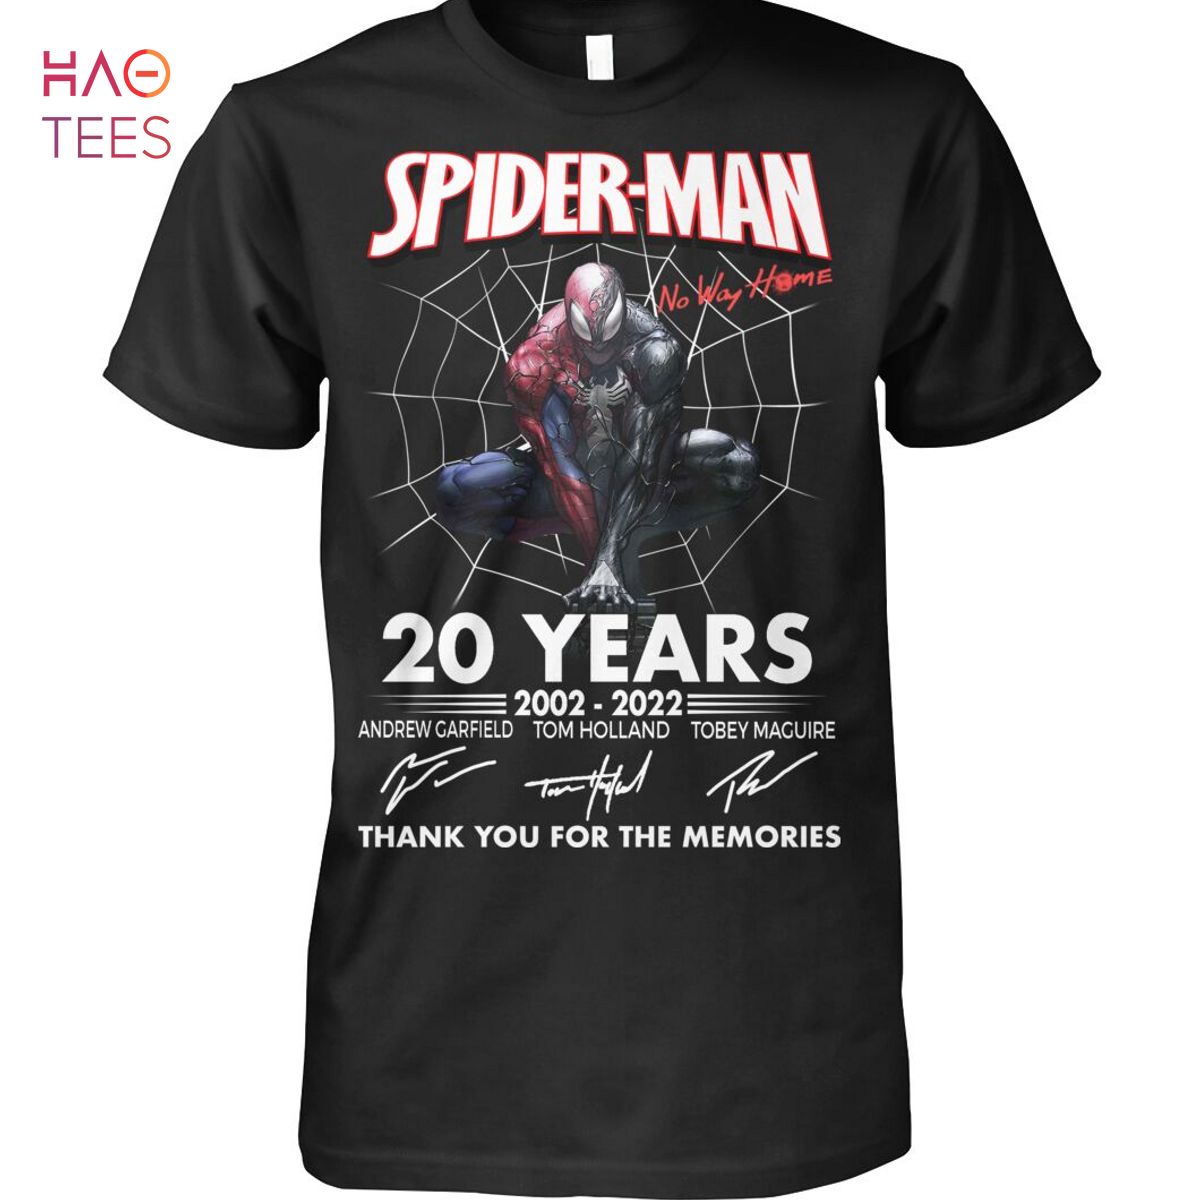 NEW Spider-Man 20 Years 2002-2022 Shirt